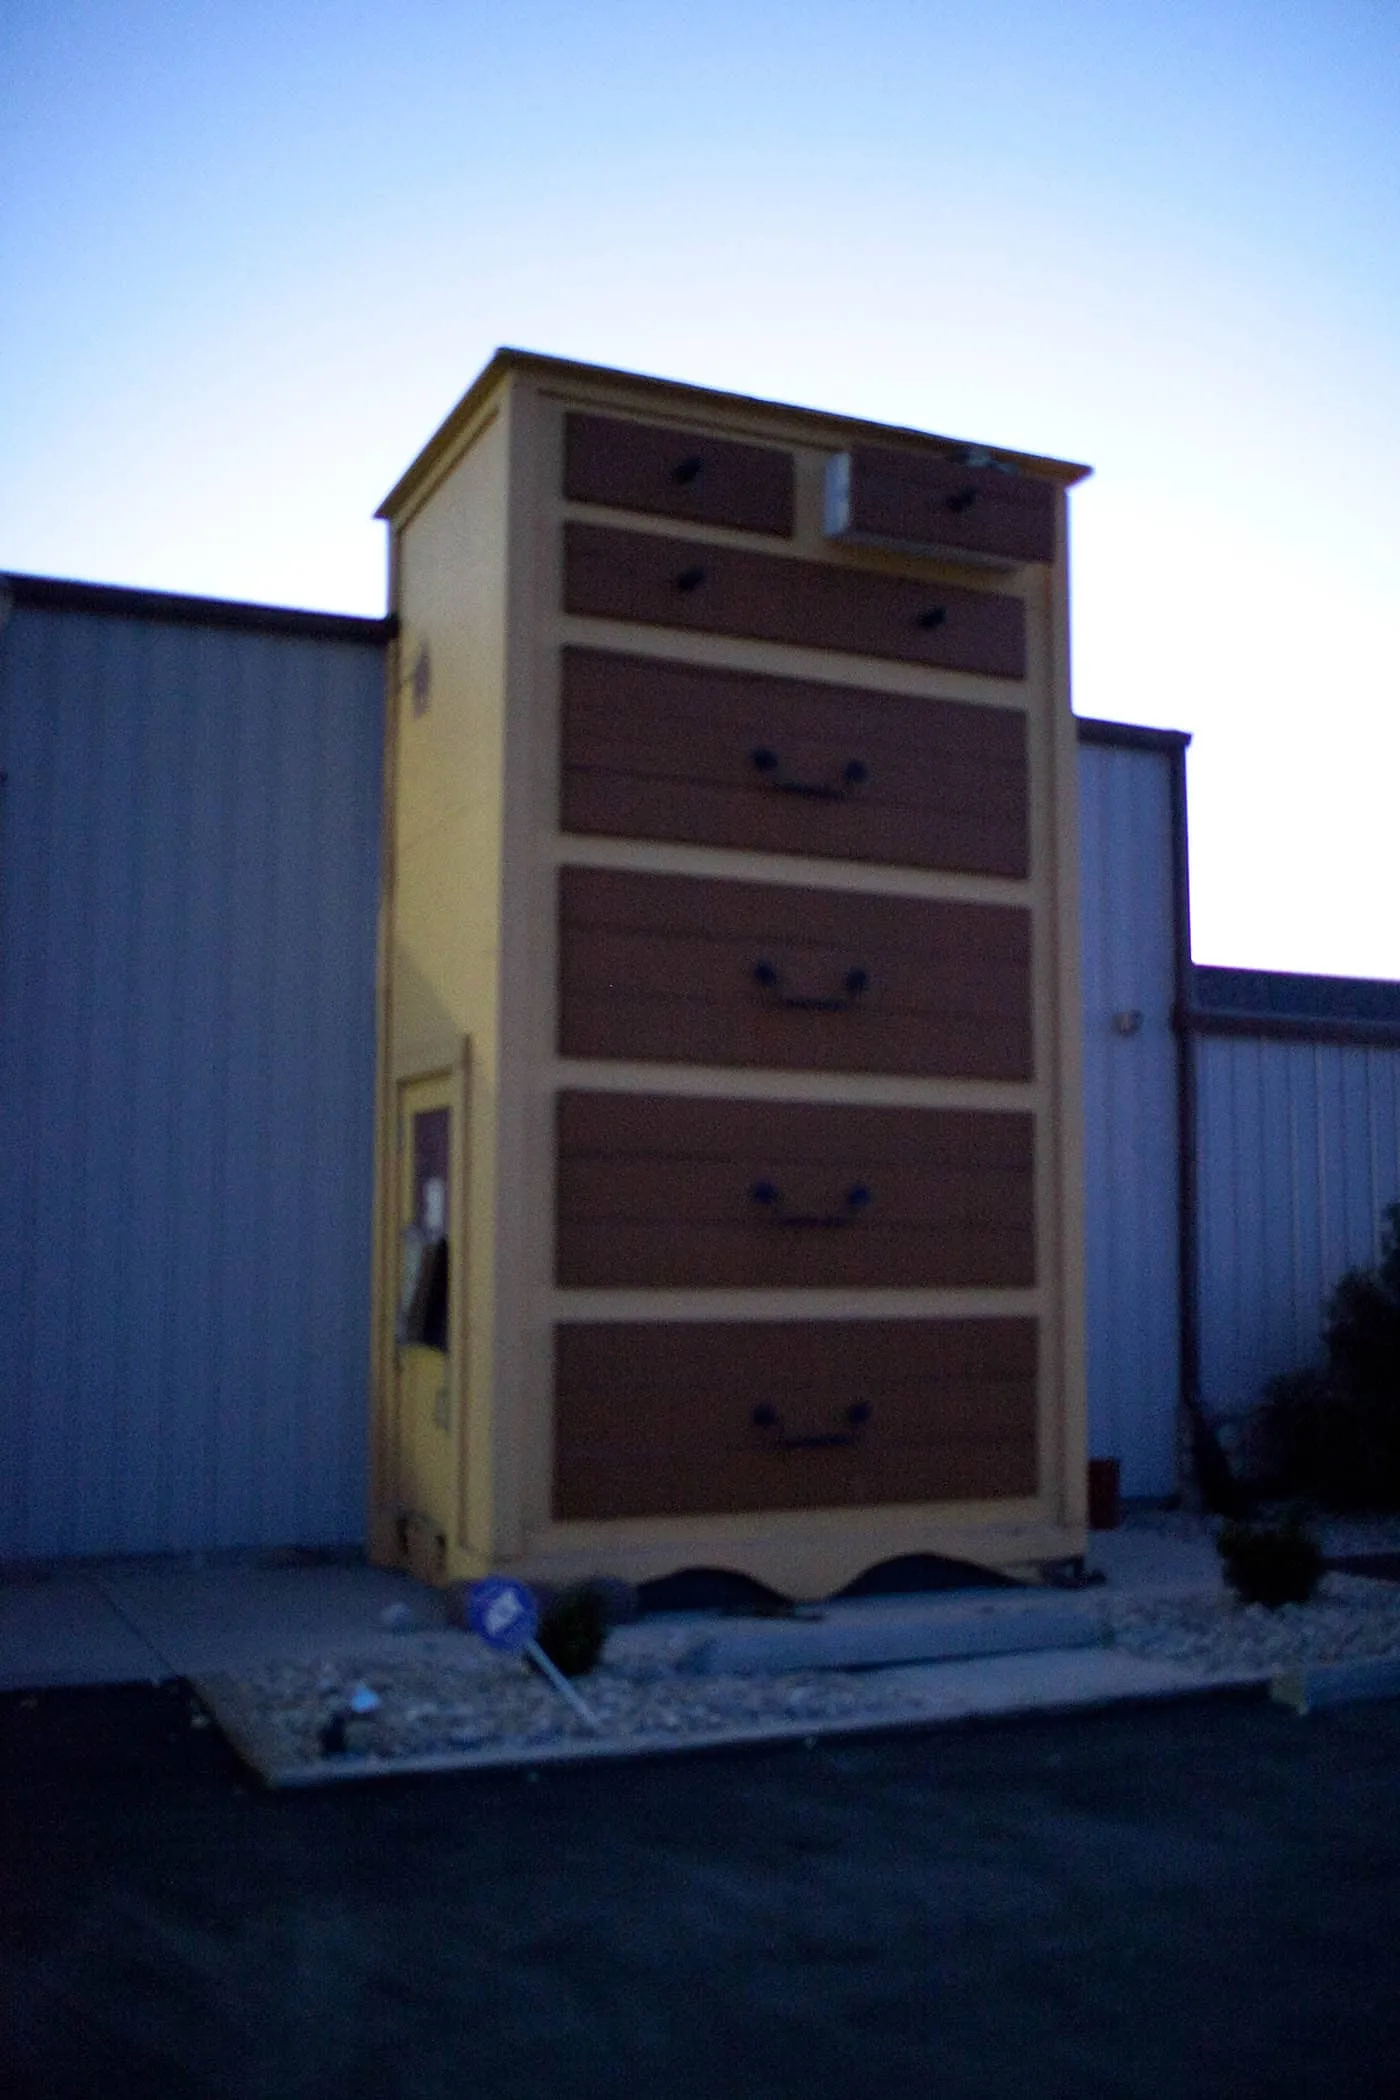 Giant dresser at Long's Furniture World - Large Dresser